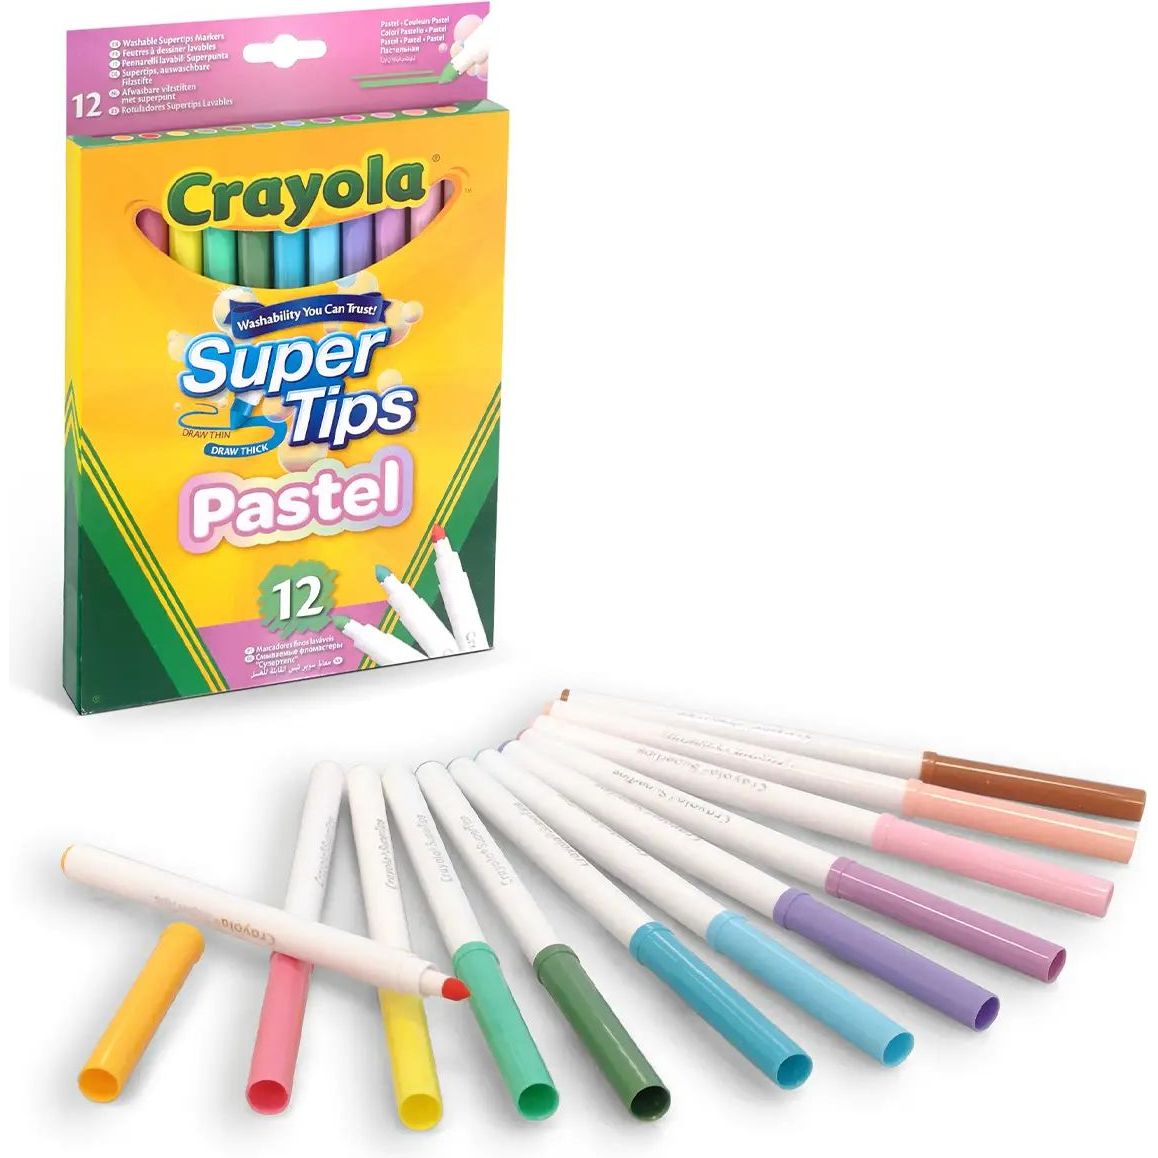 Набор фломастеров Crayola SuperTips washable пастельные цвета 12 шт. (58-7515) - фото 2